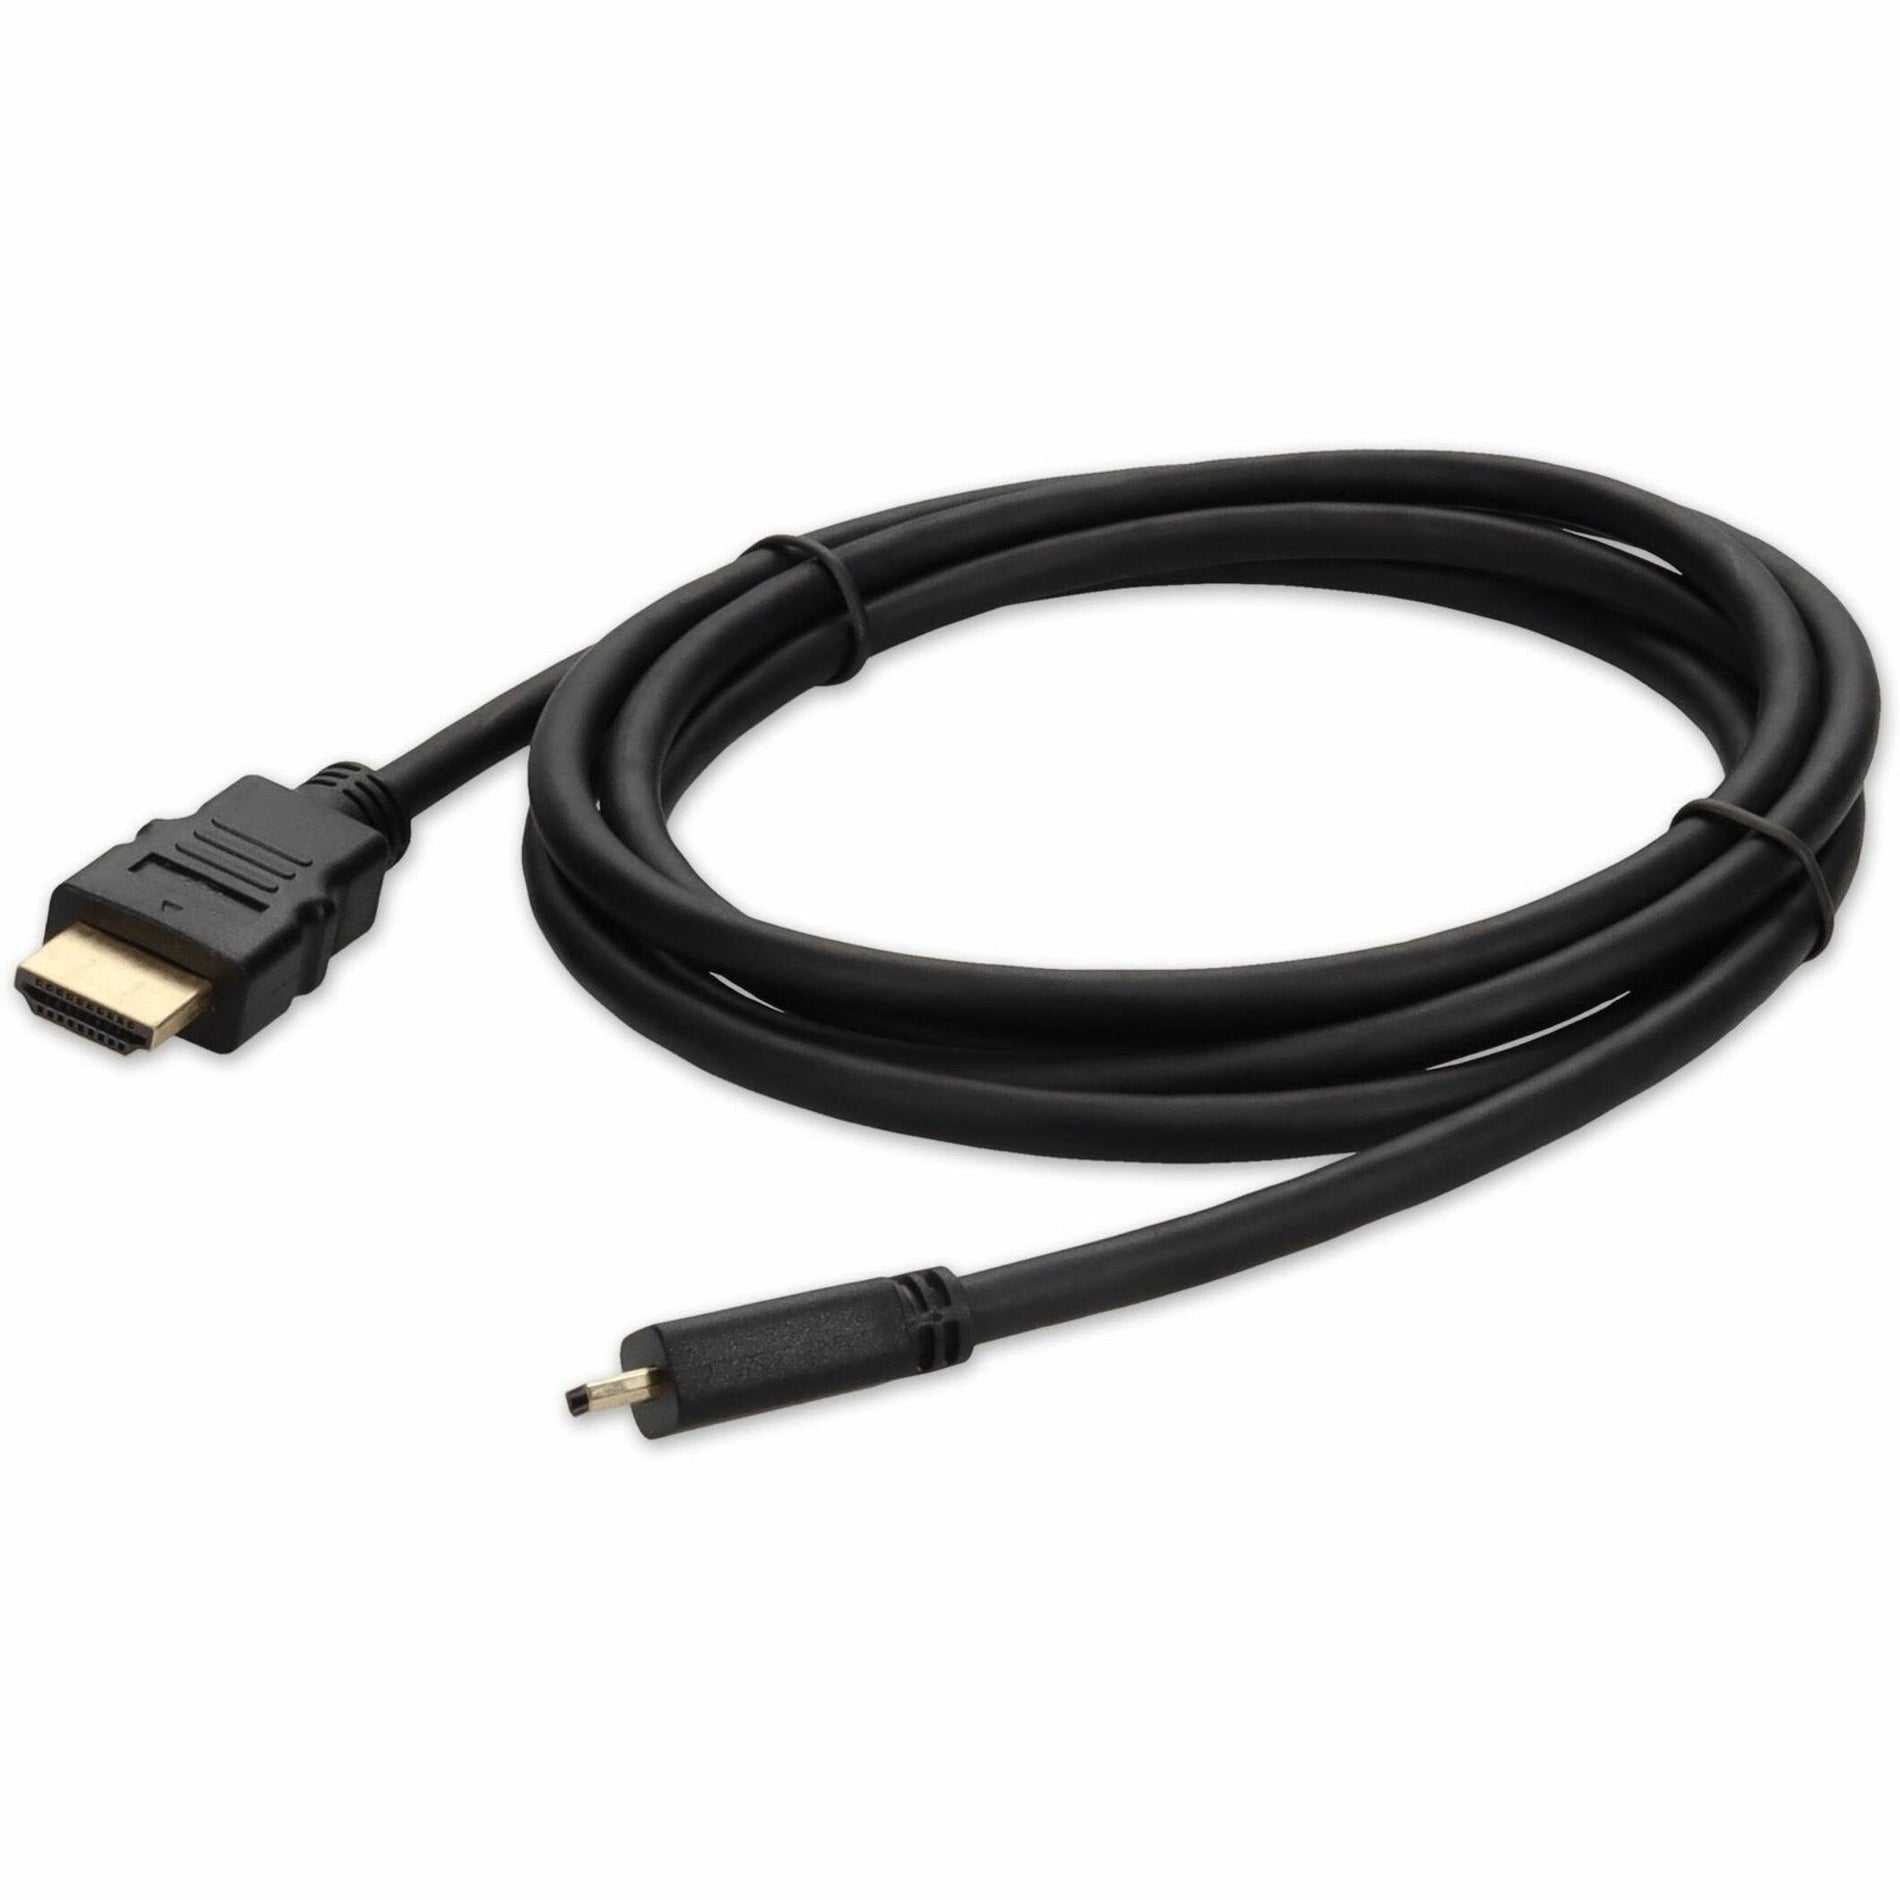 Aggiungi su cavo dell'adattatore da HDMI2 a HDMI3 da 30 cm - Maschio a Maschio Condotto in Rame Lunghezza del Cavo 30 cm Nero